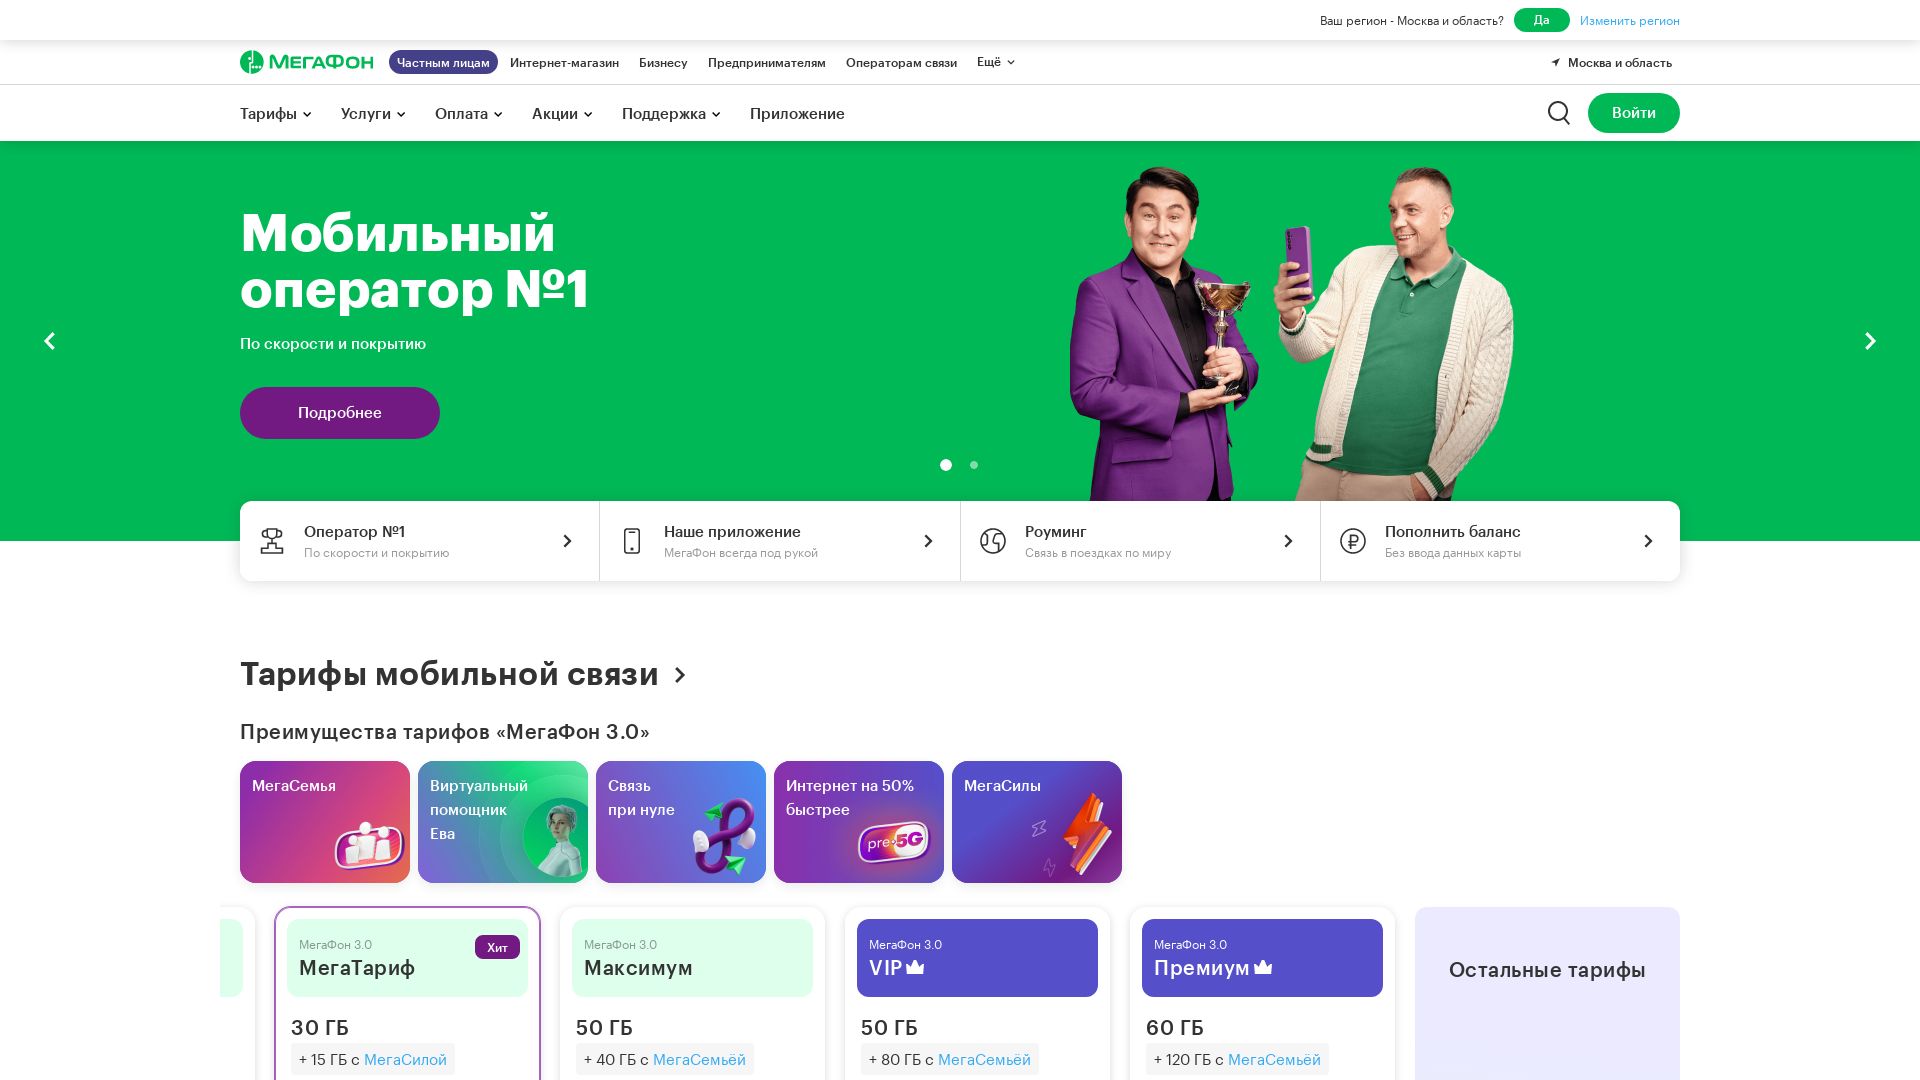 Website status megafon.ru is   ONLINE